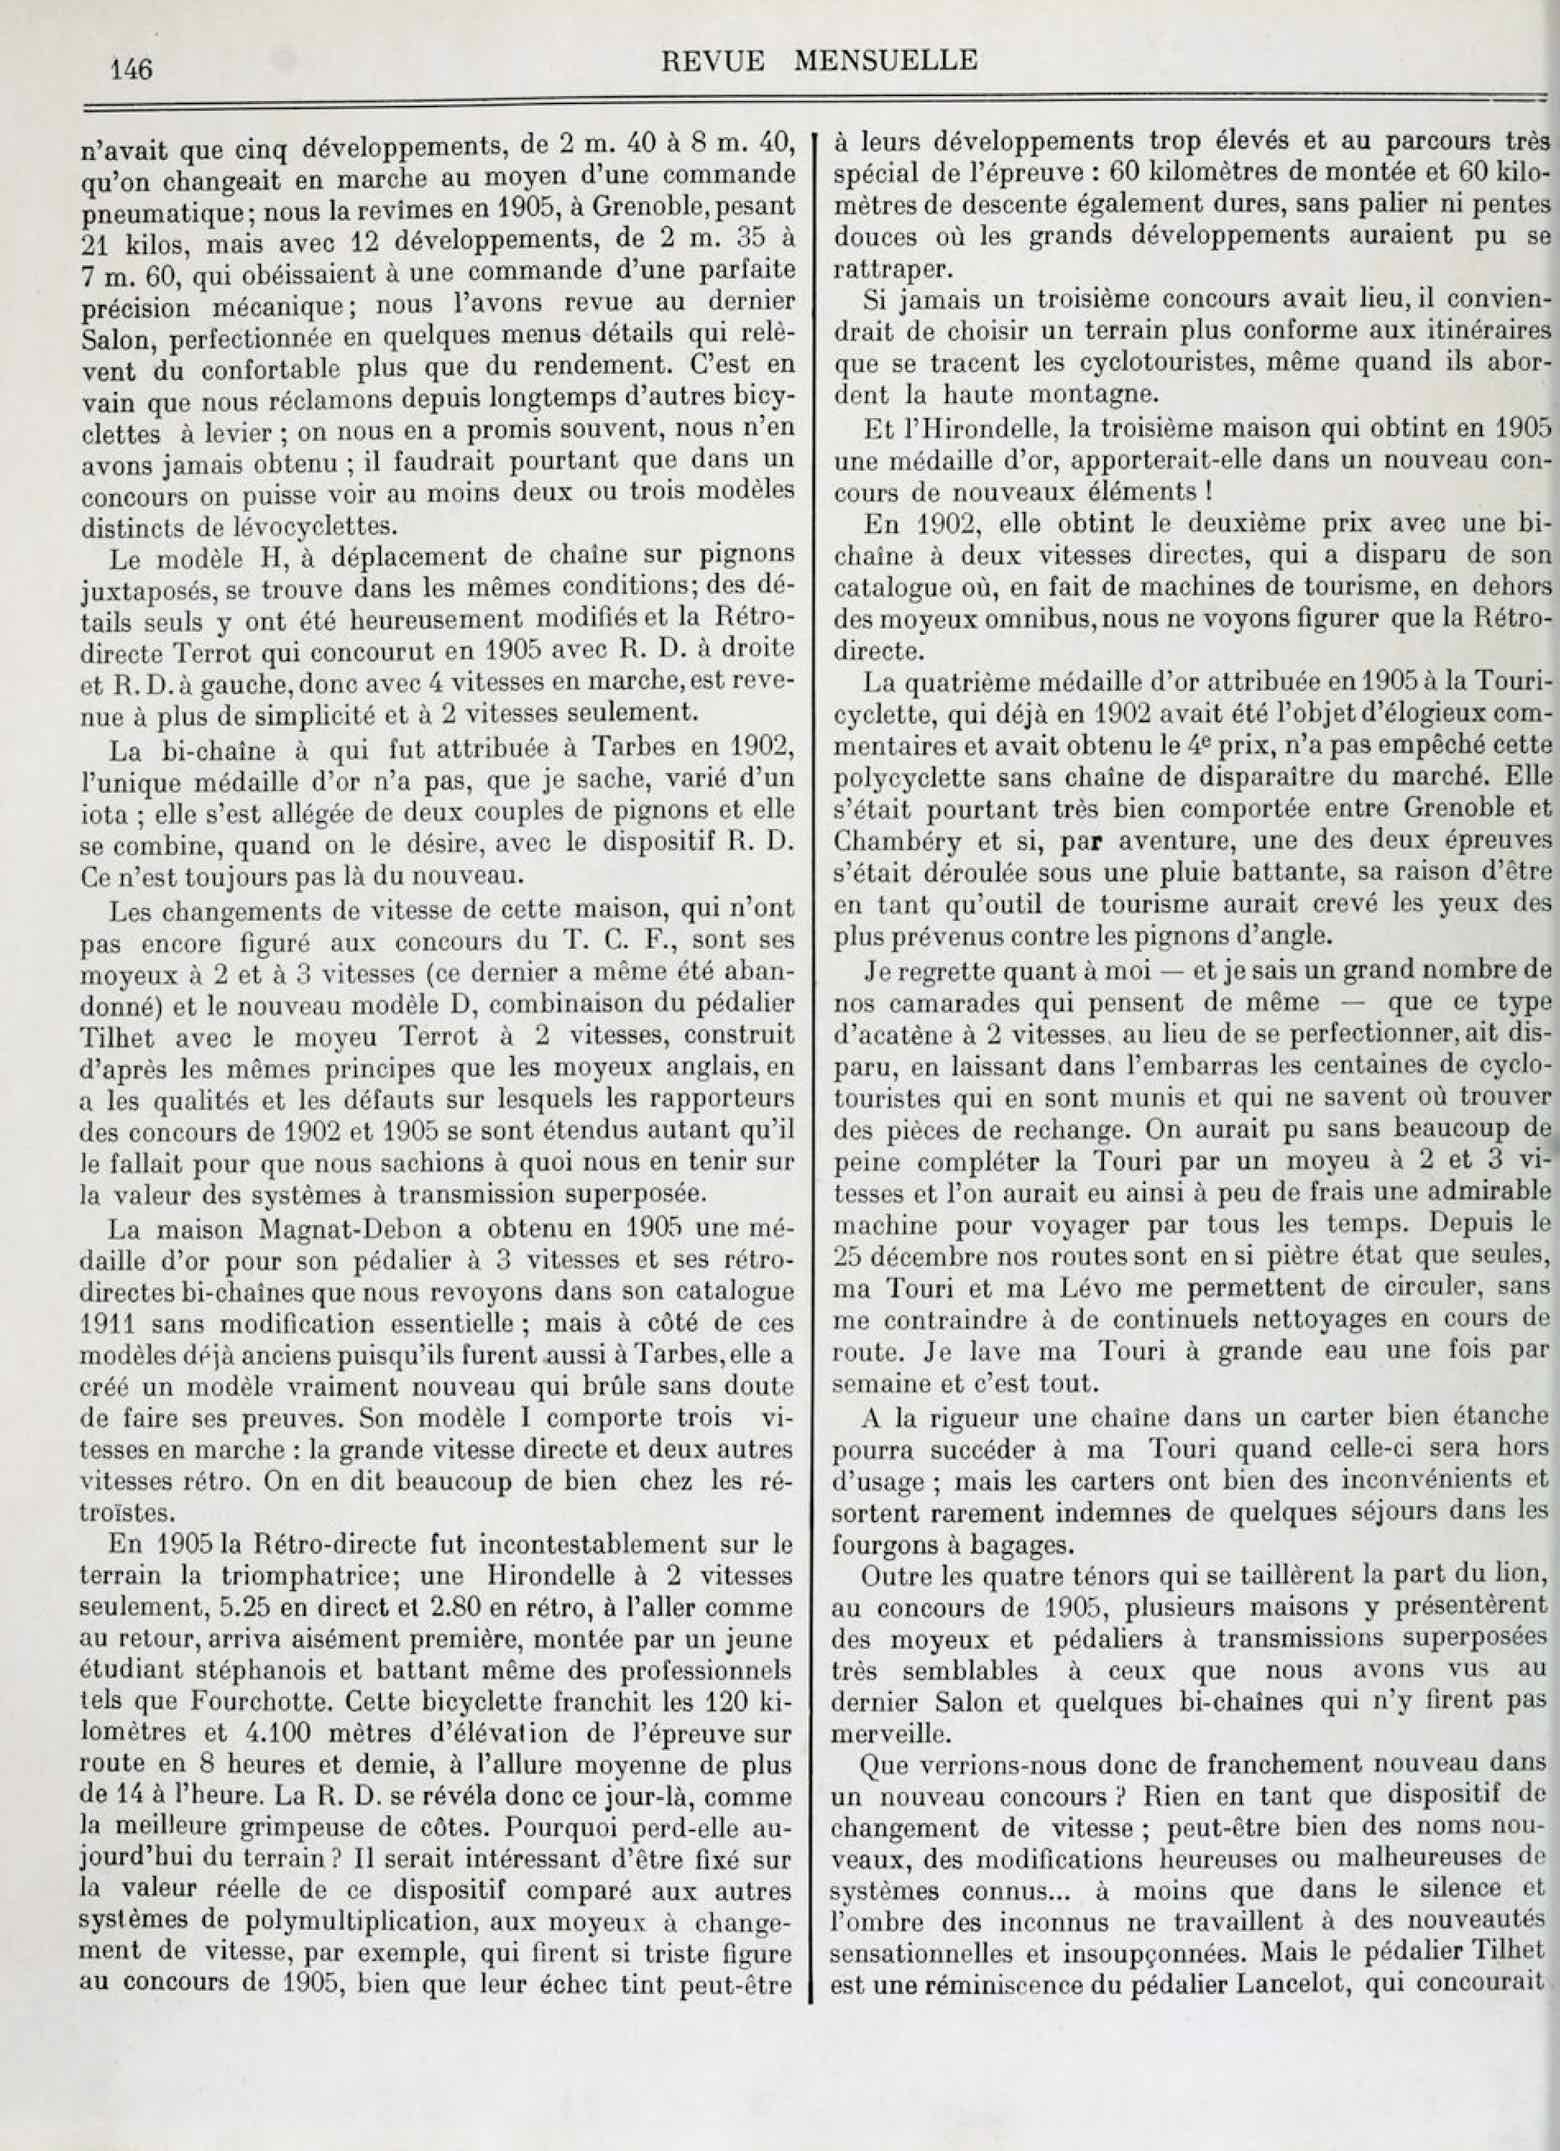 T.C.F. Revue Mensuelle April 1911 - Un Nouveau Concours? scan 2 main image